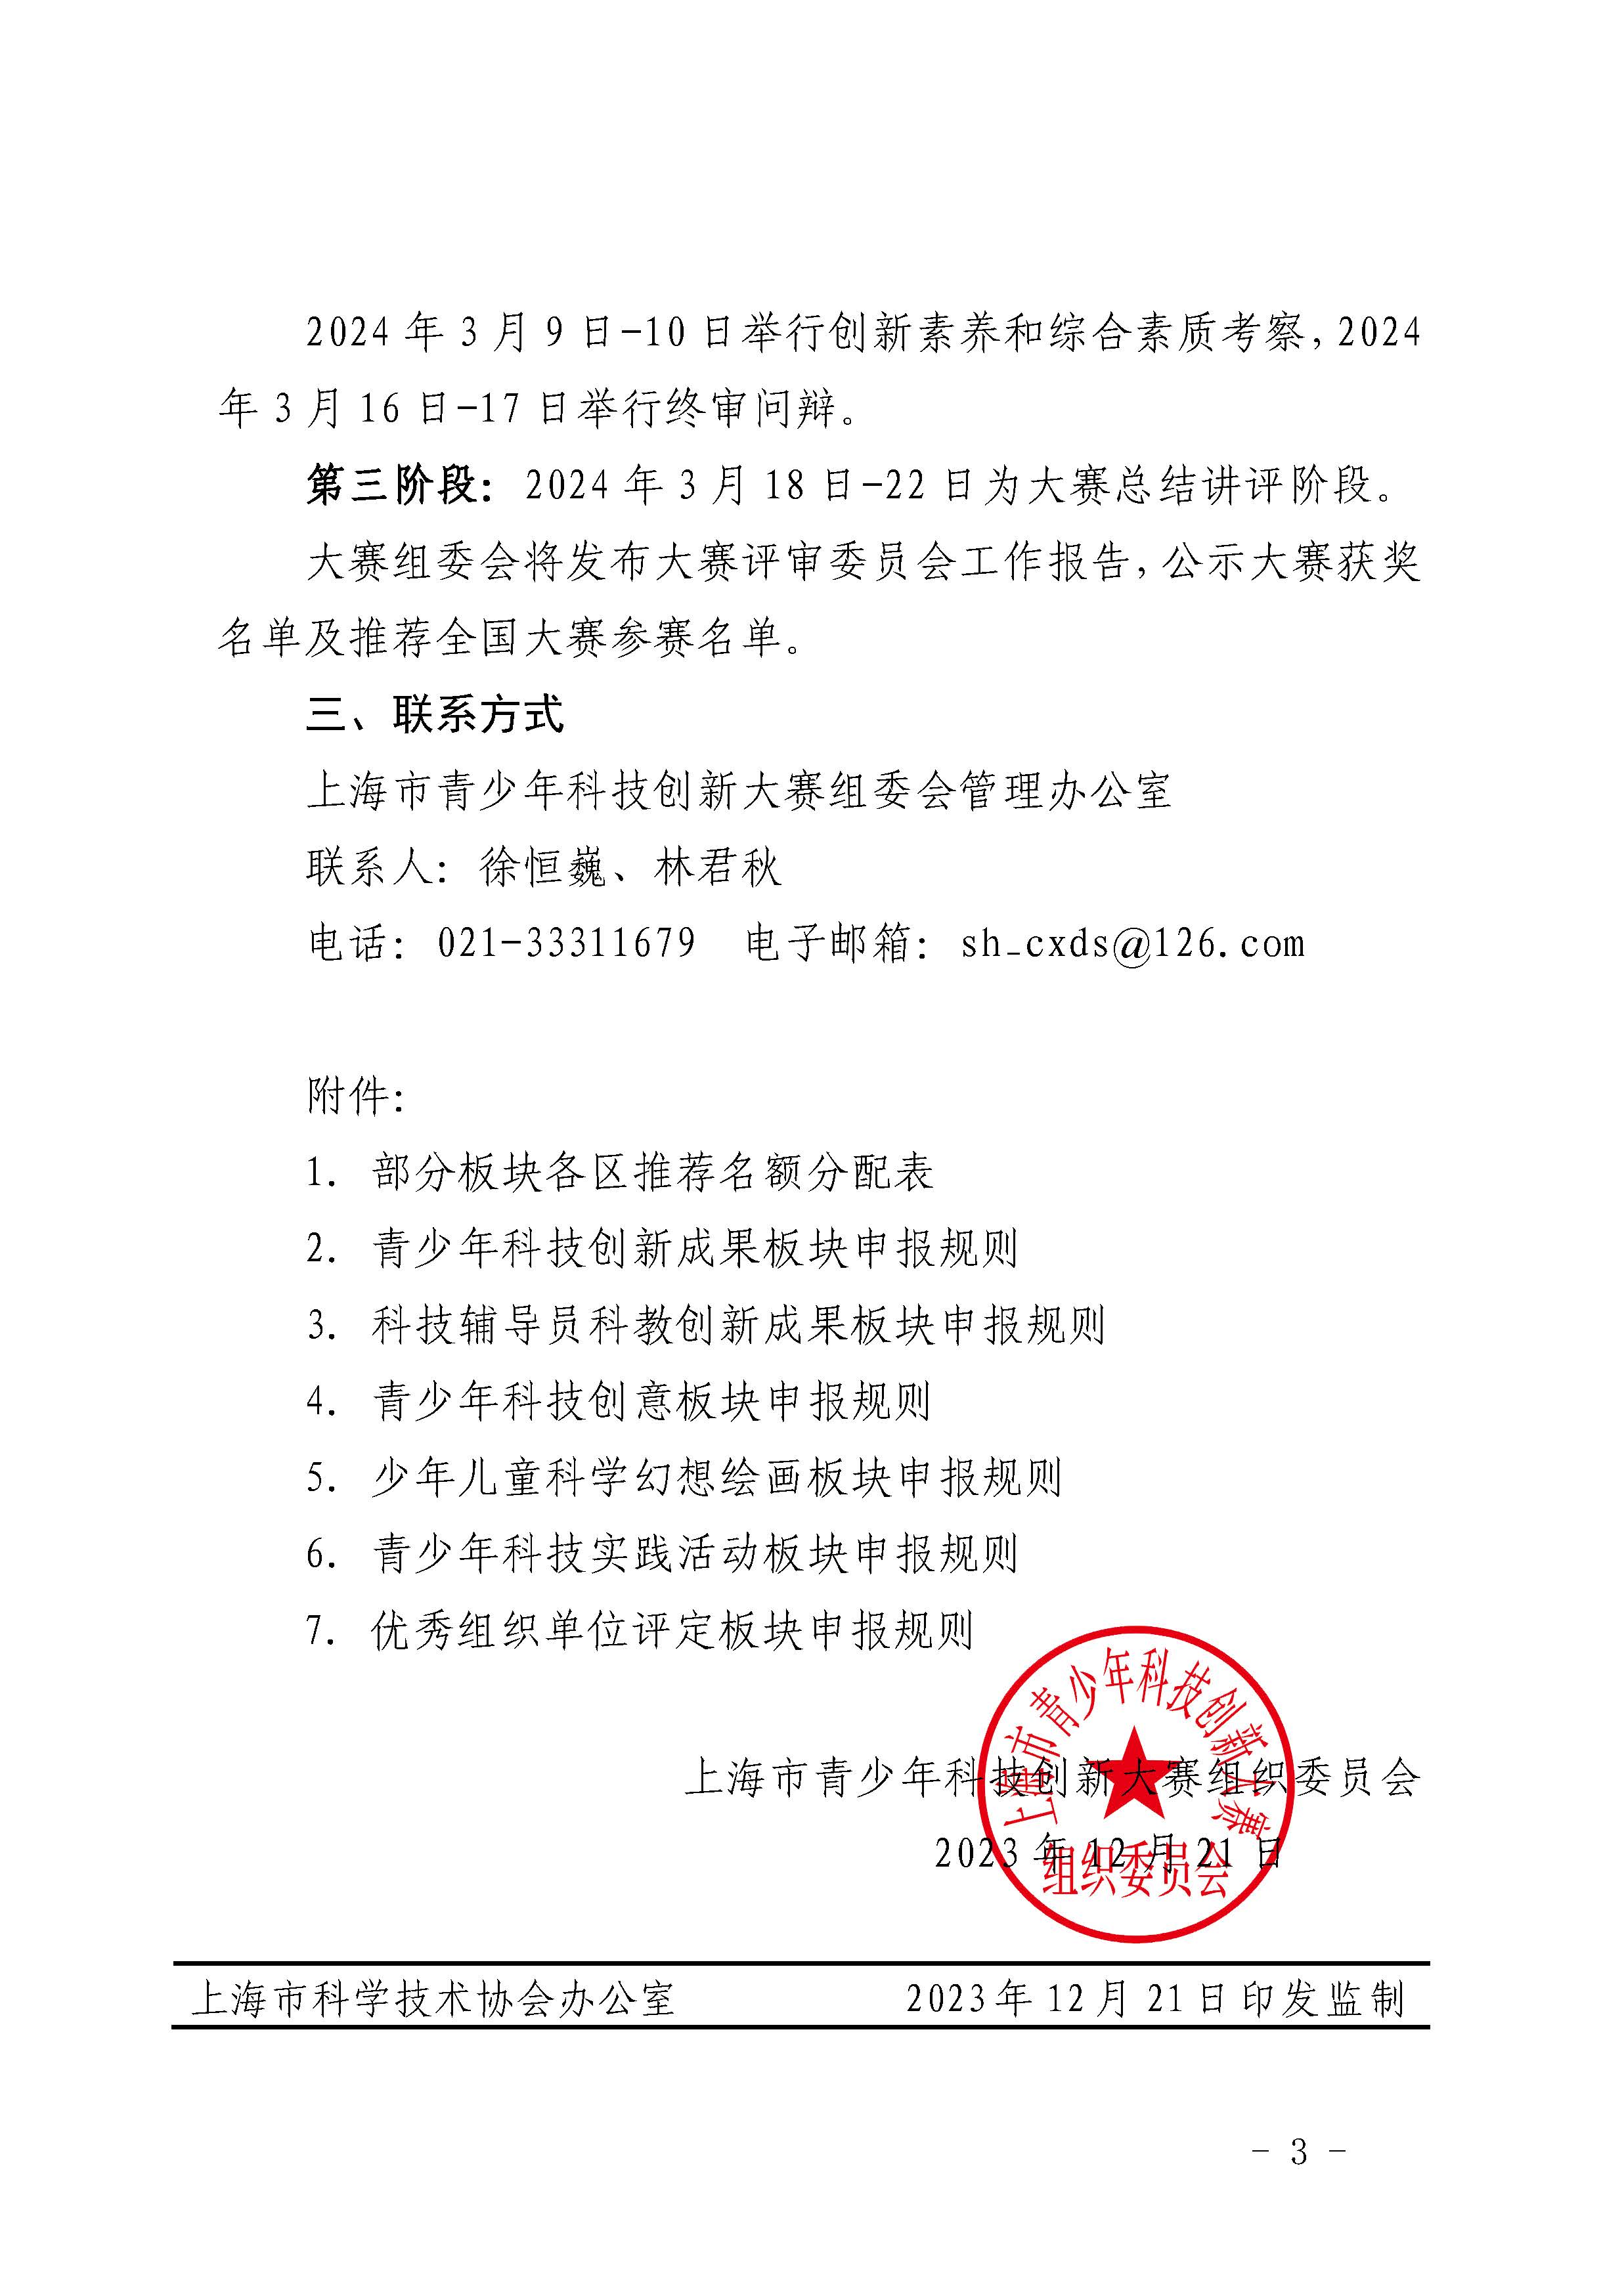 第39届上海市青少年科技创新大赛举办通知V4.3_页面_03.jpg